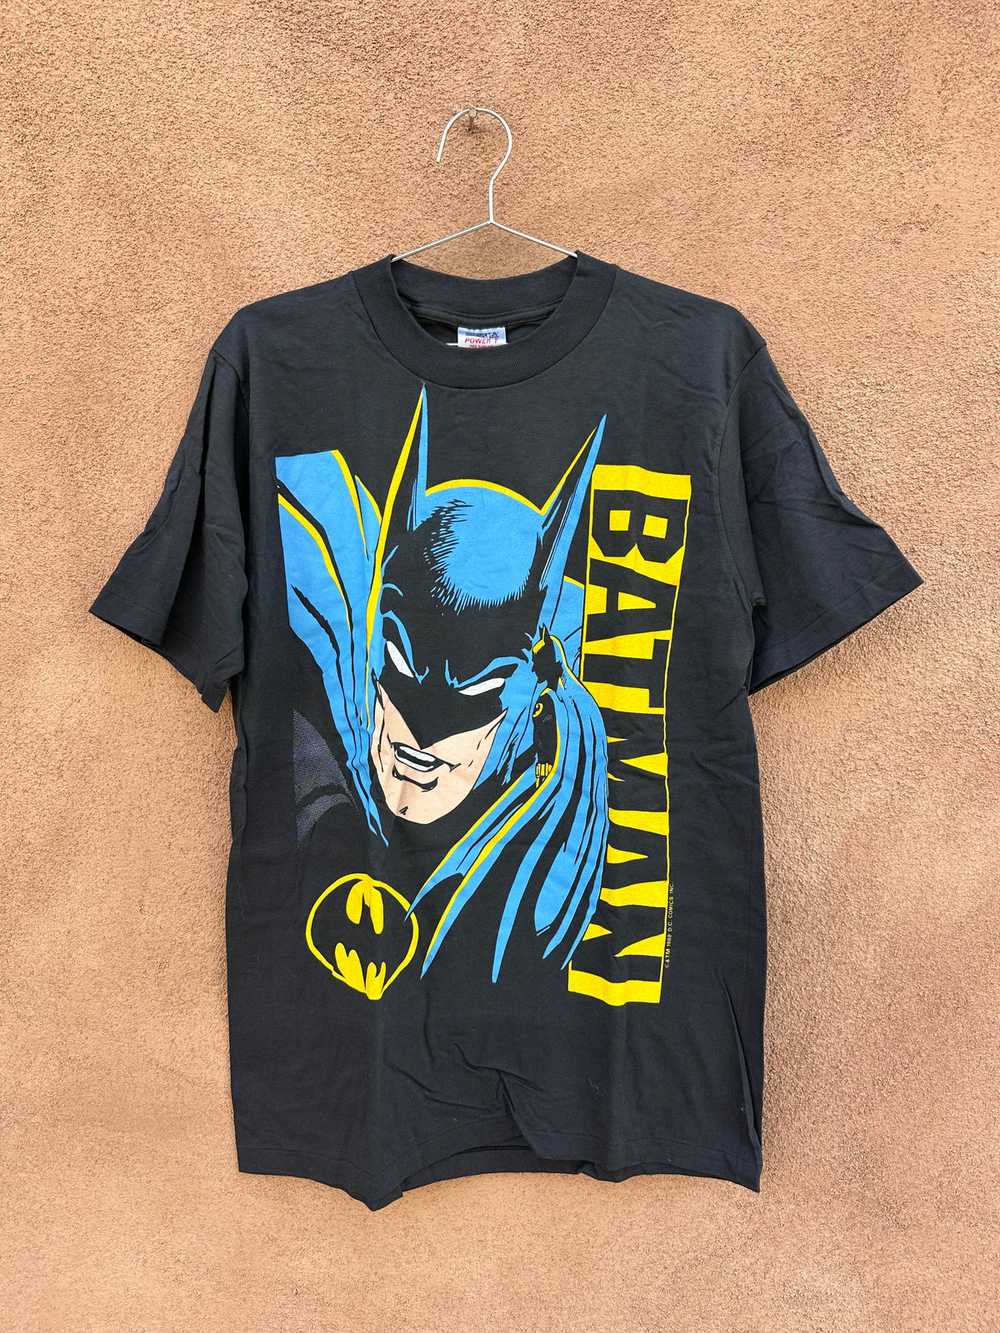 1988 Batman D.C. Comics T-shirt - image 1